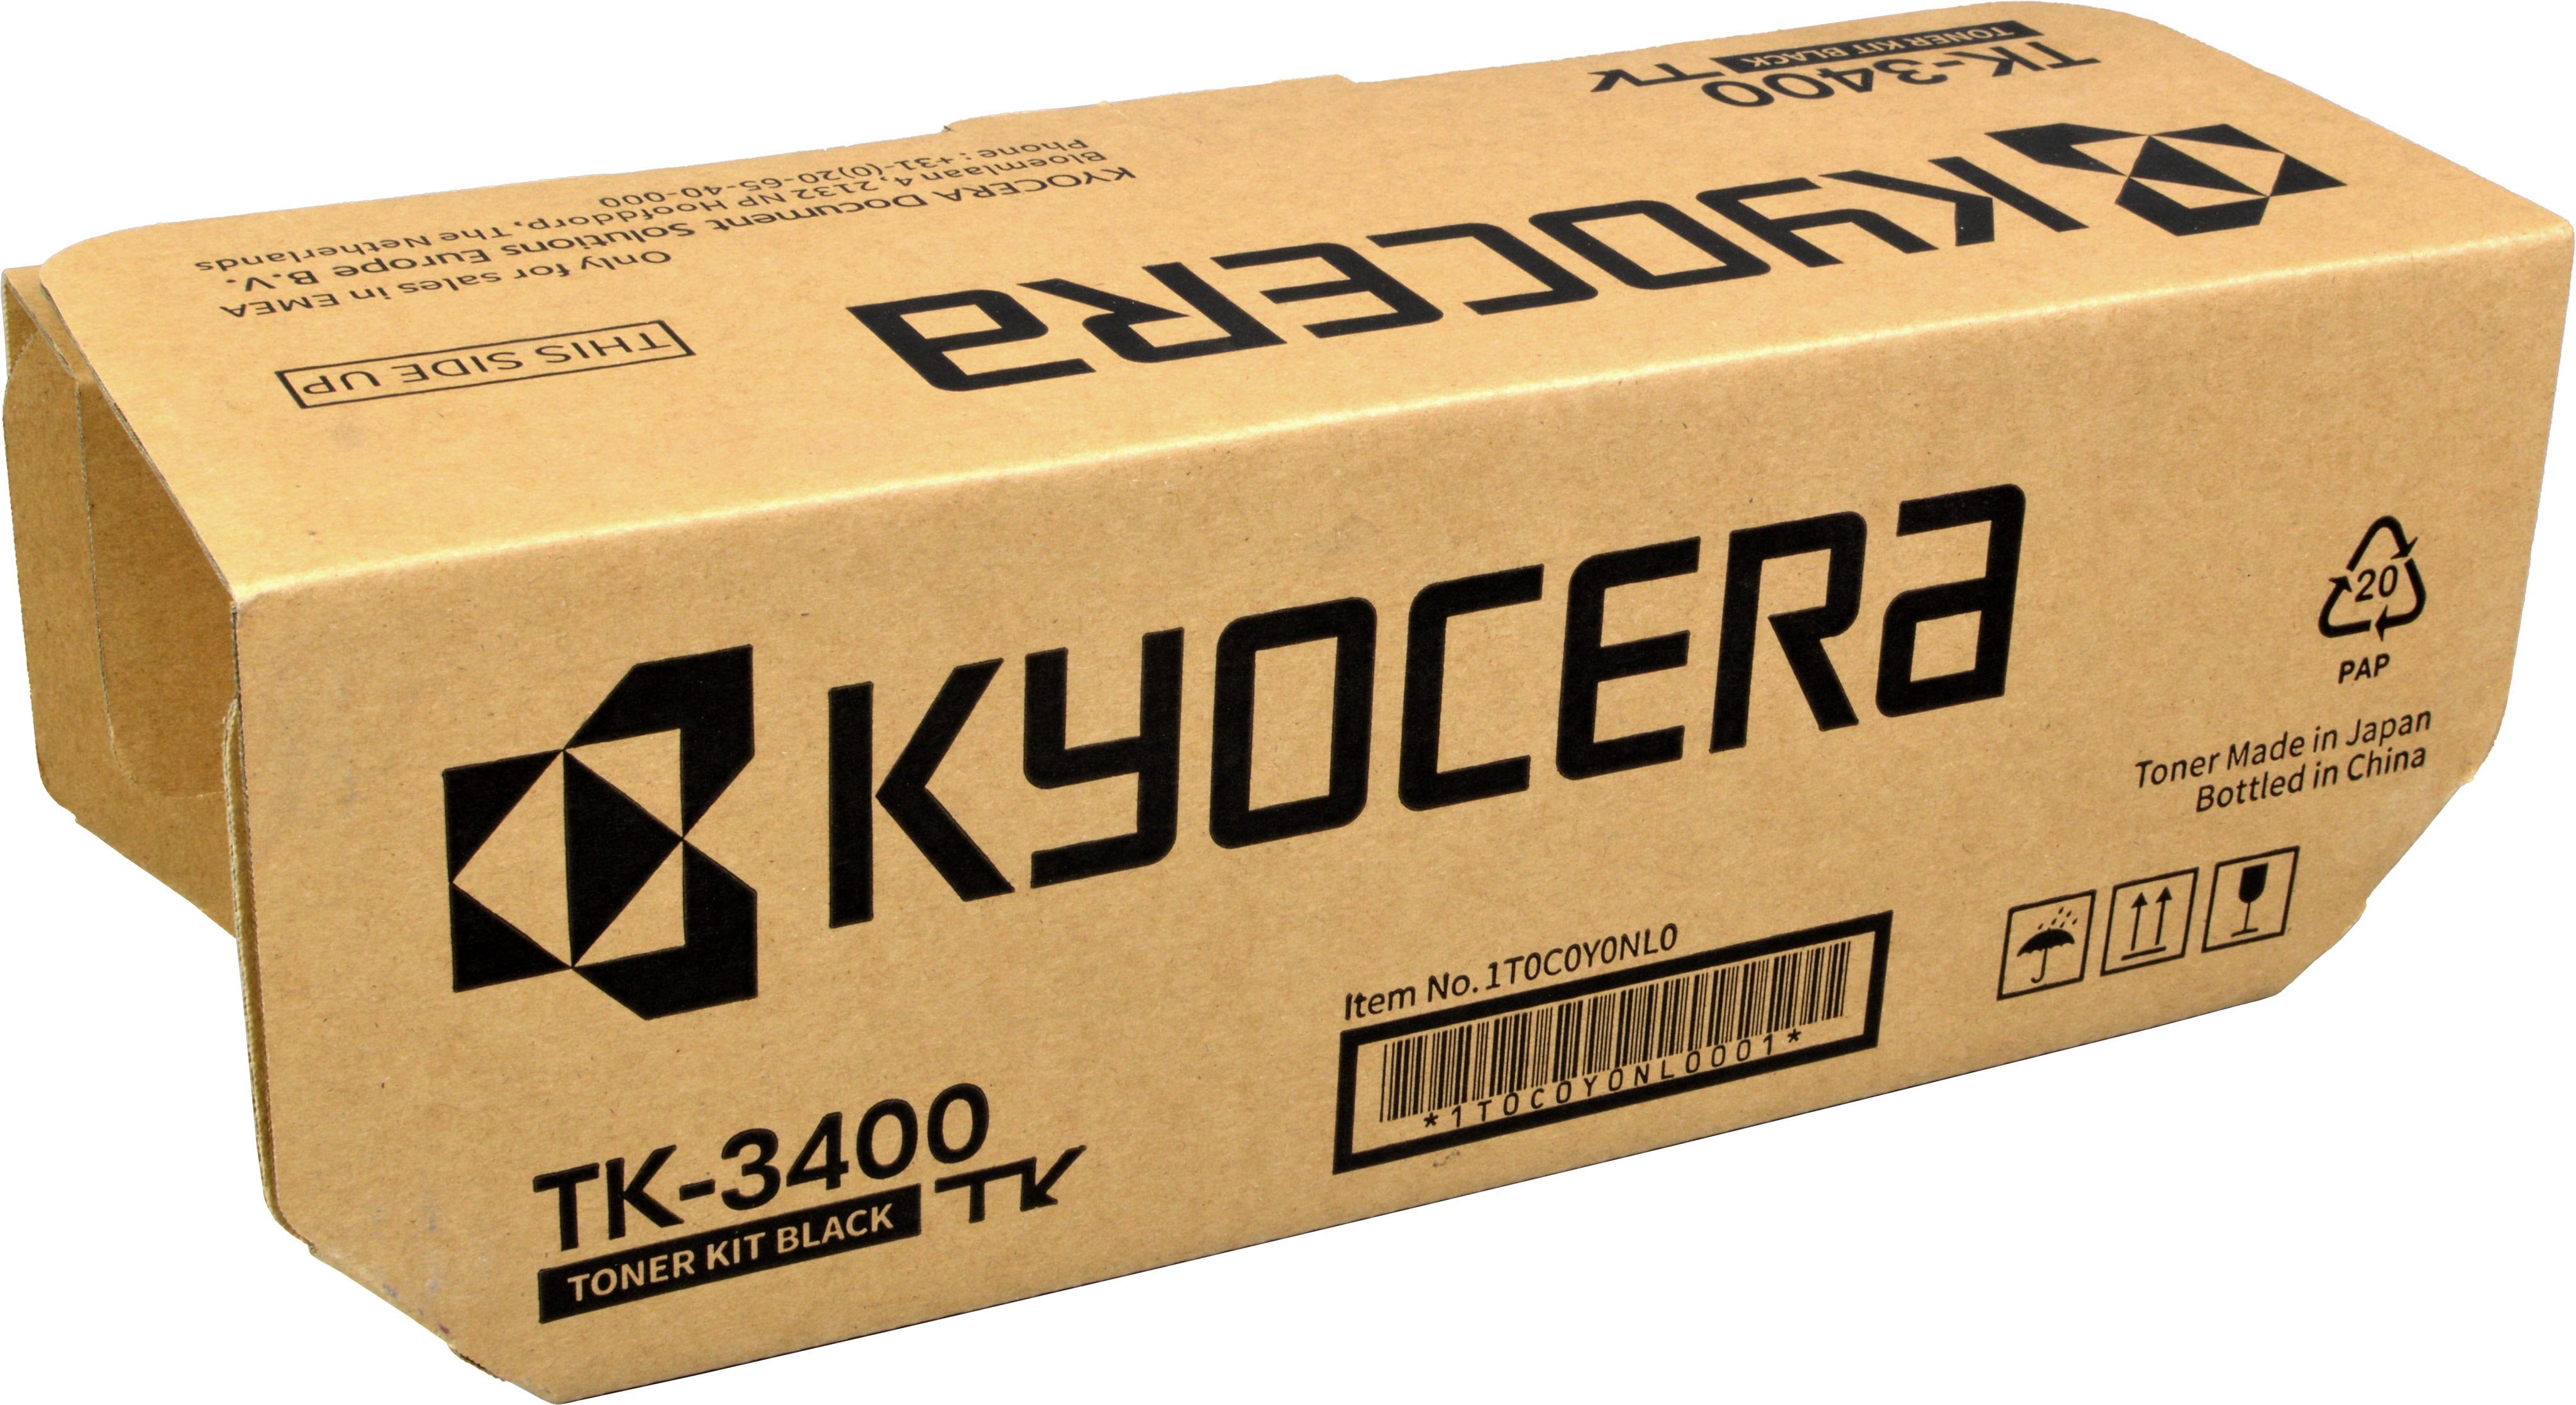 Kyocera Toner TK-3400  1T0C0Y0NL0  schwarz